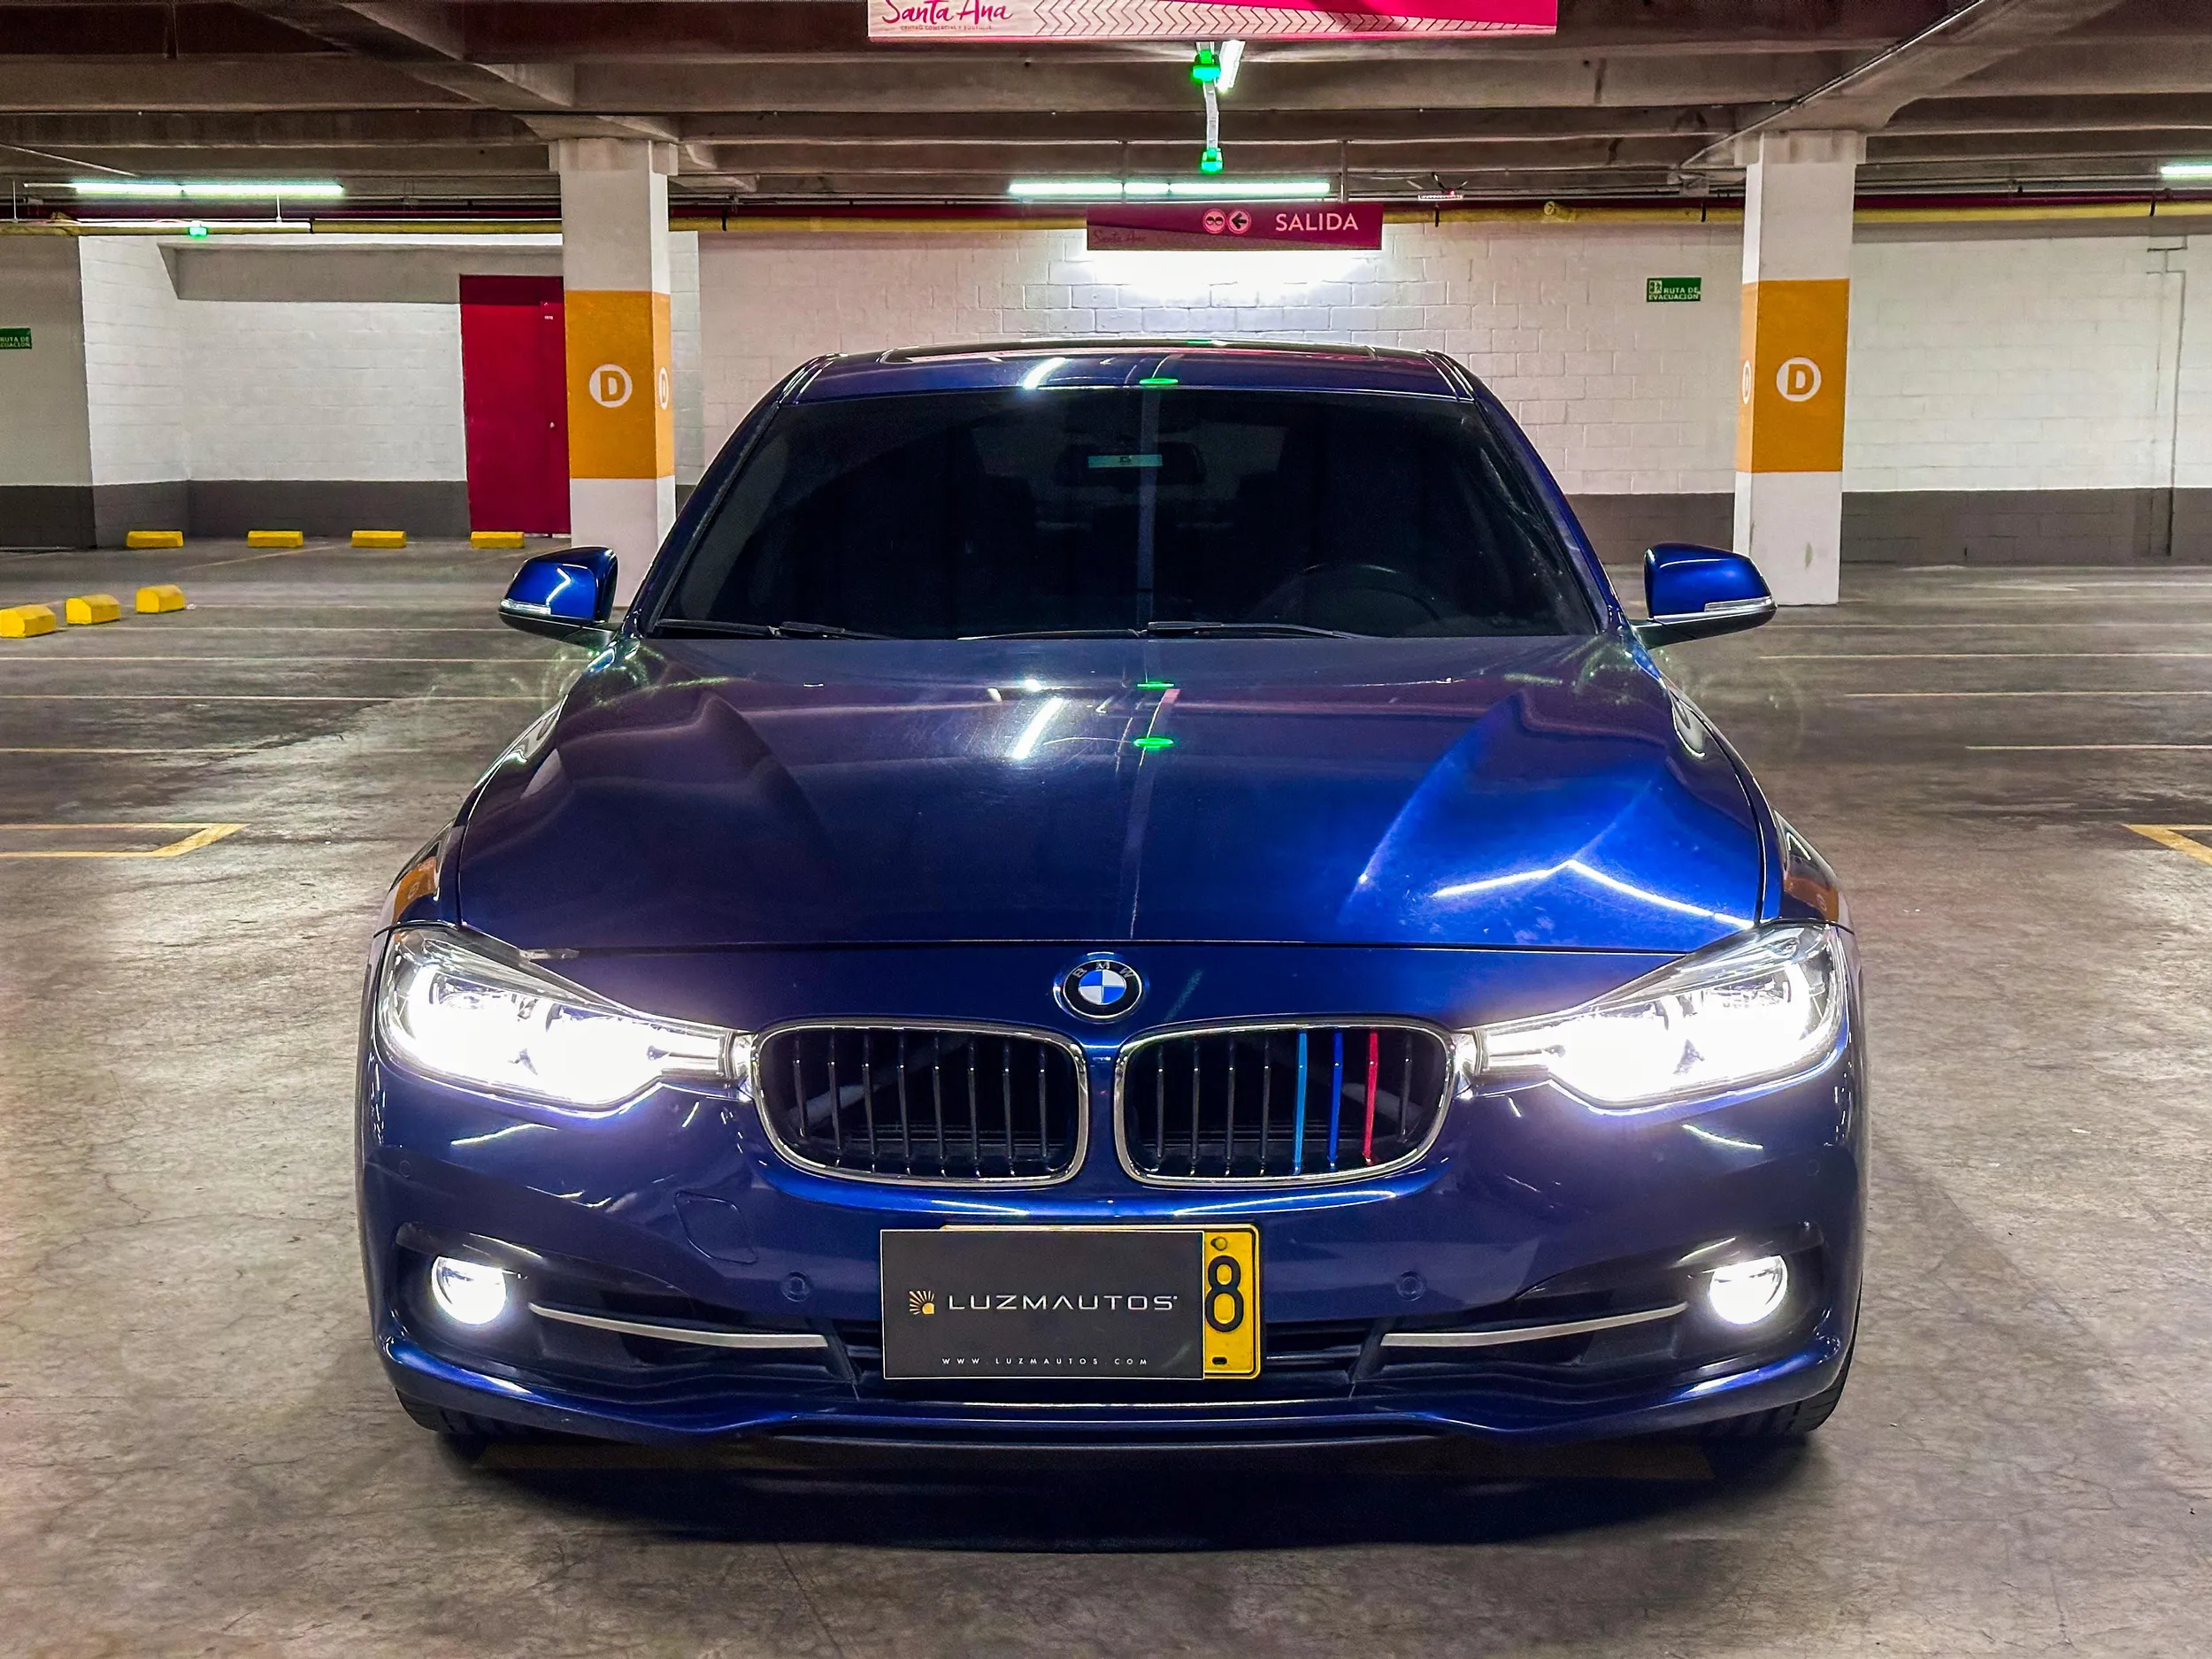 BMW CARROS 320i G20 Sportline 2018